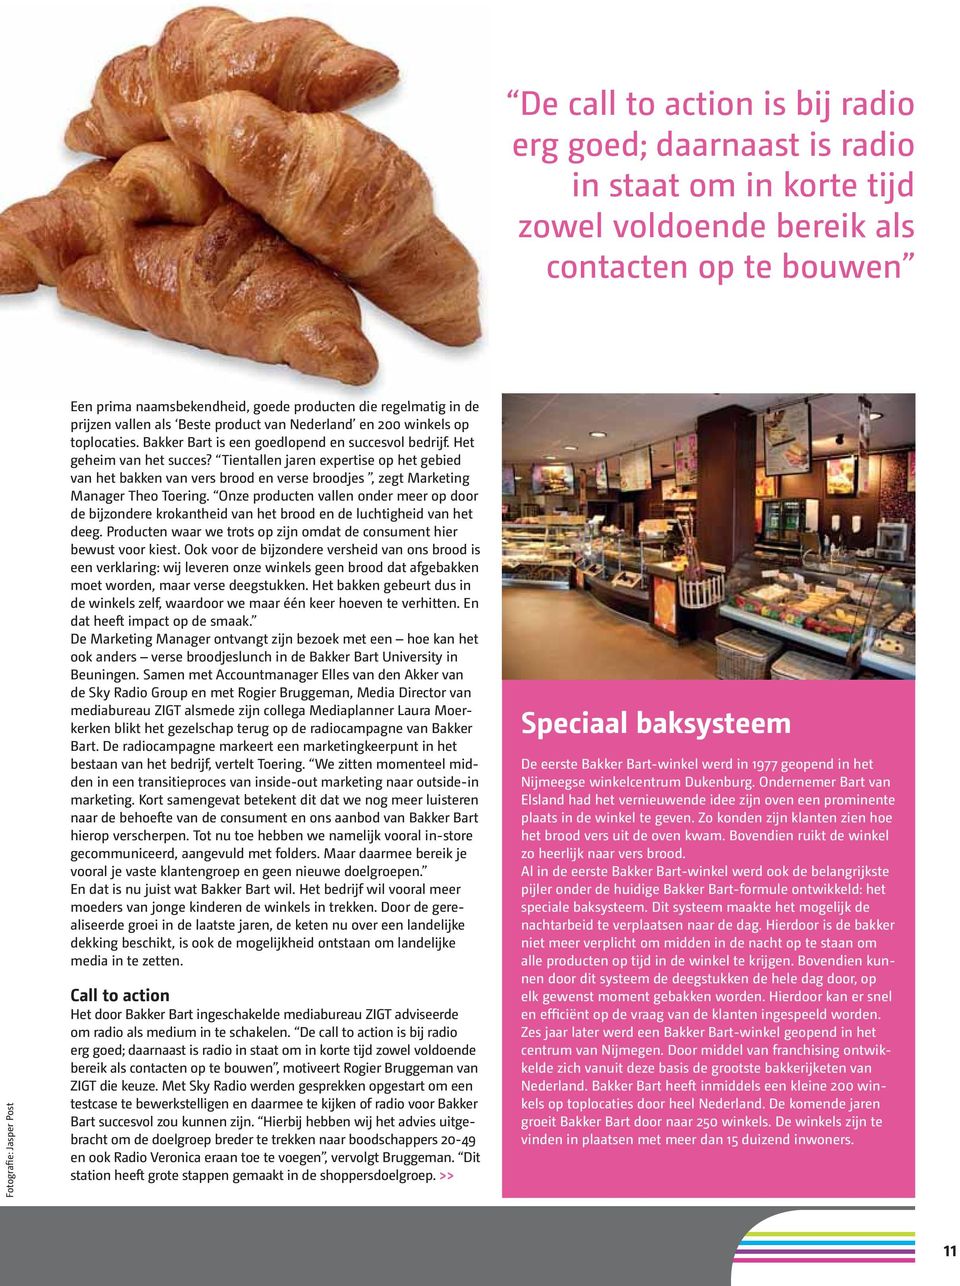 Tientallen jaren expertise op het gebied van het bakken van vers brood en verse broodjes, zegt Marketing Manager Theo Toering.